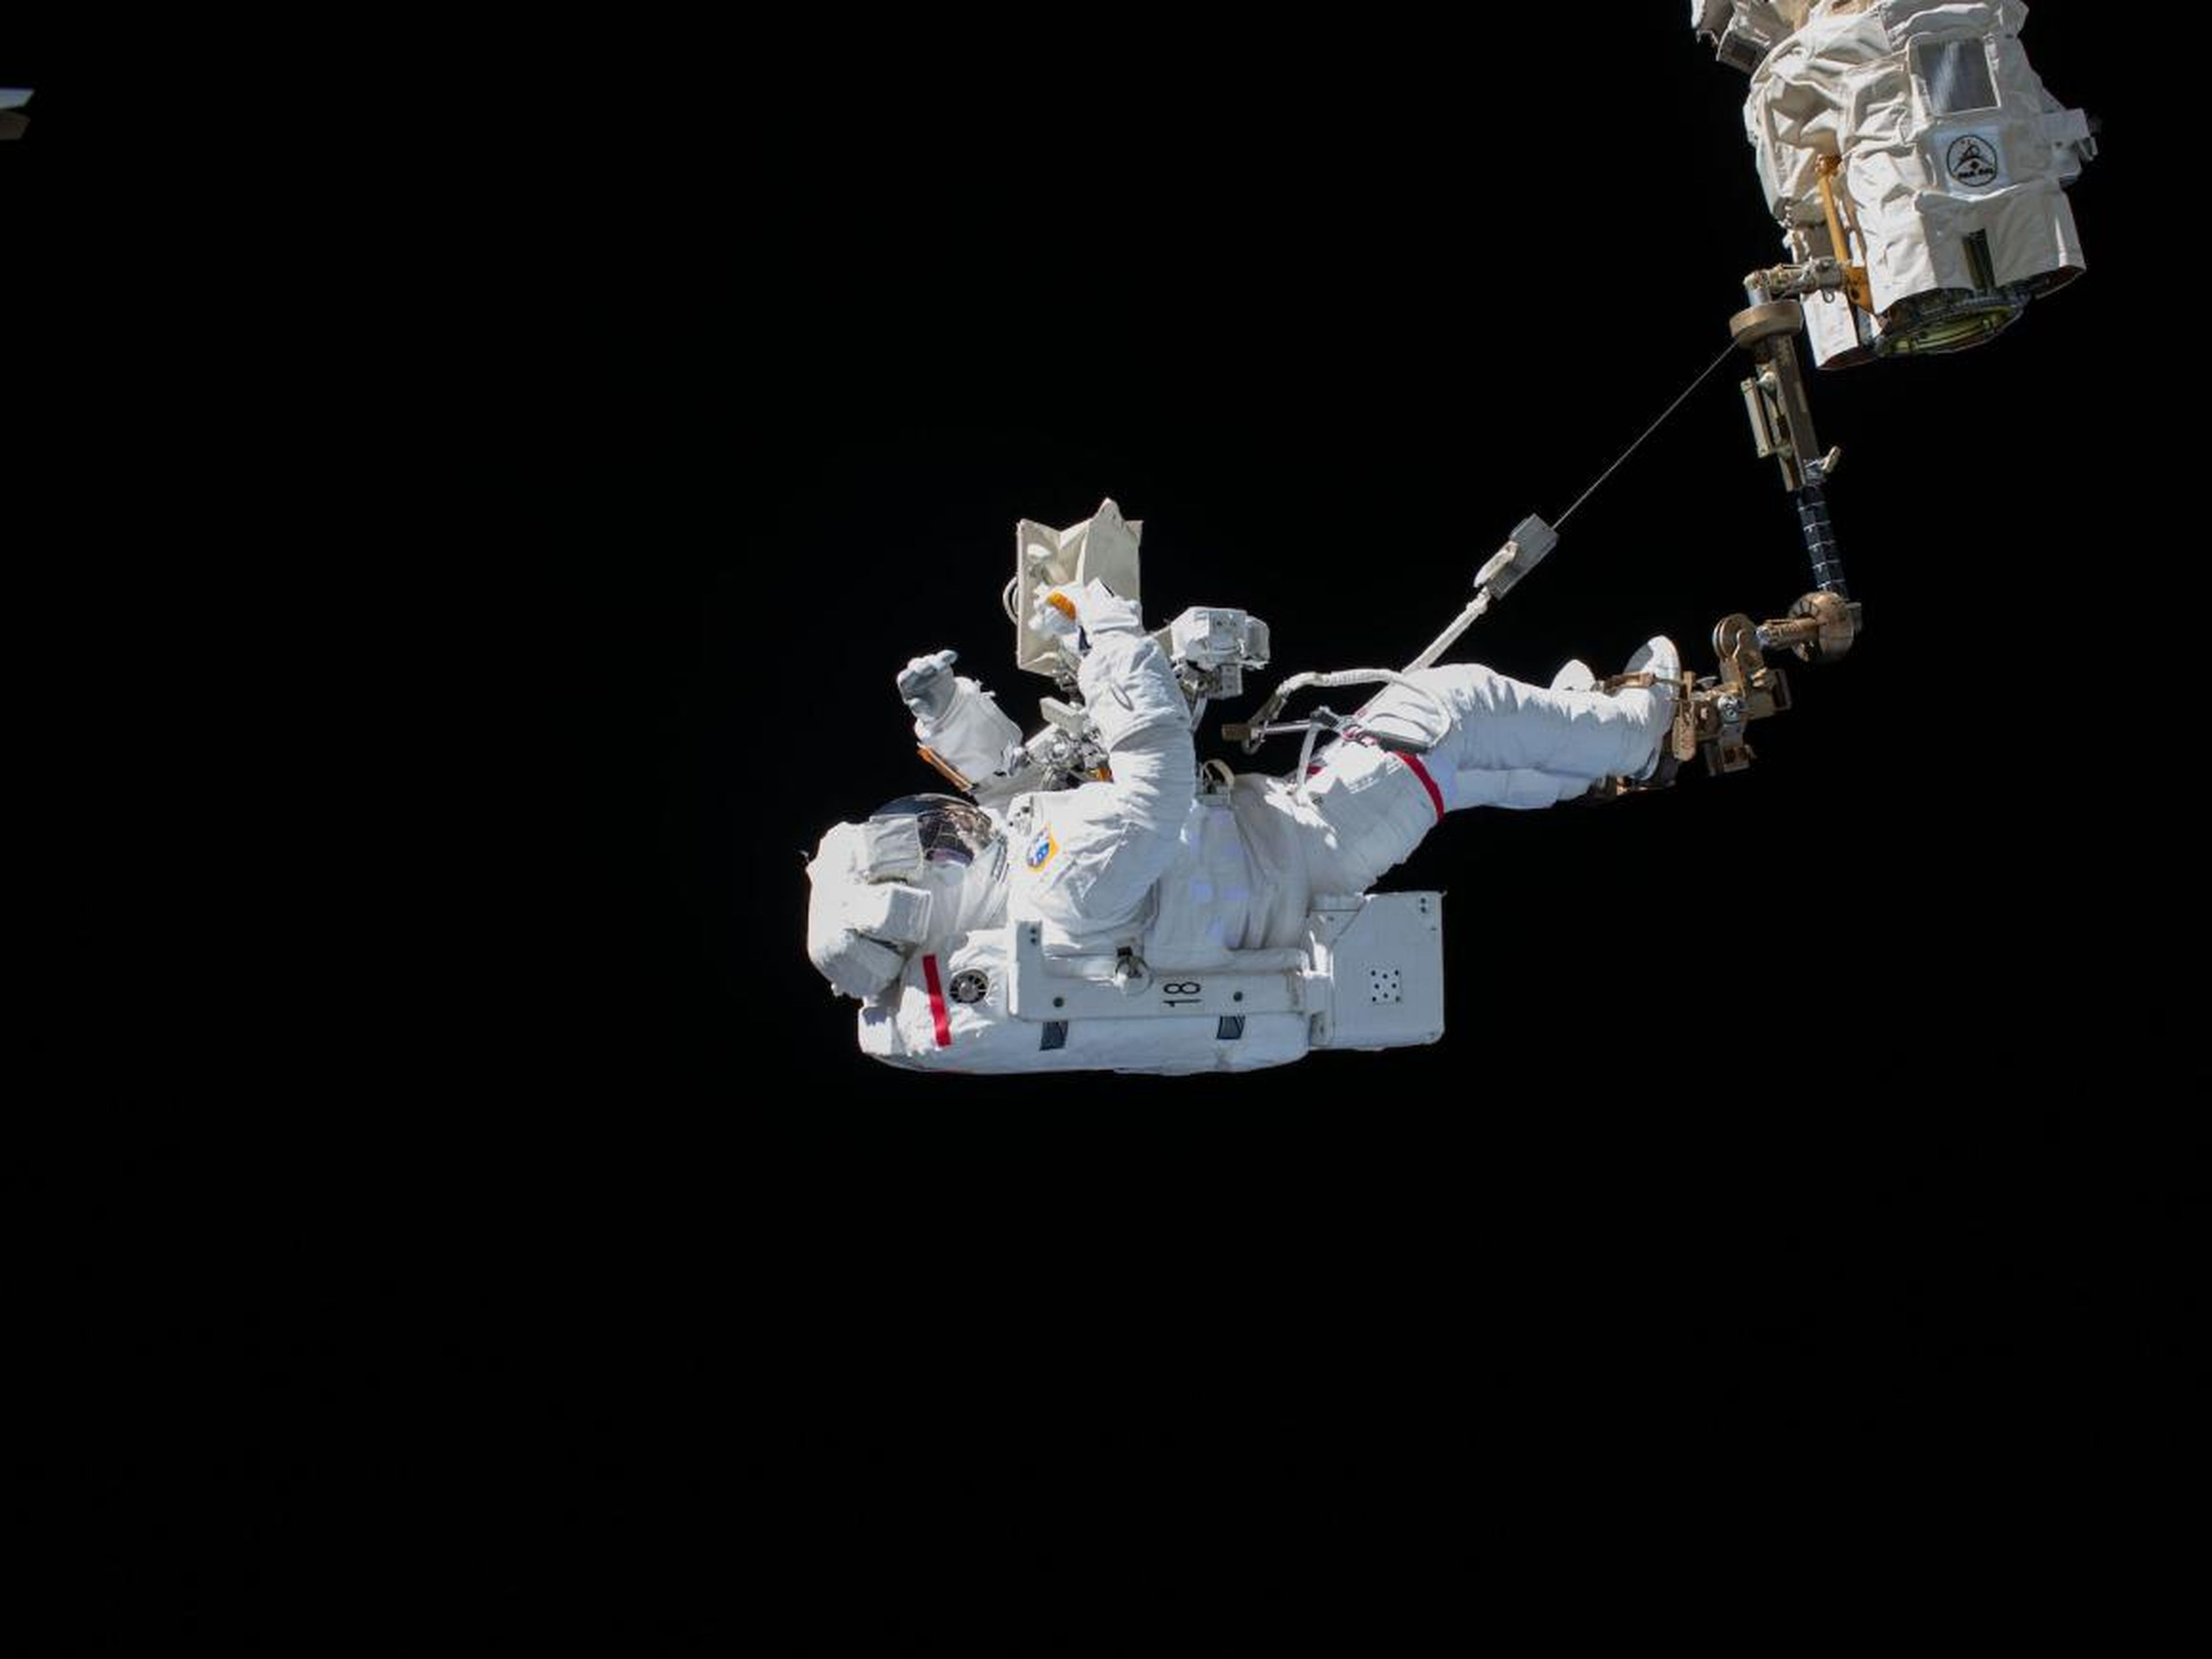 El astronauta Luca Parmitano realizó una caminata espacial. 15 de noviembre de 2019.